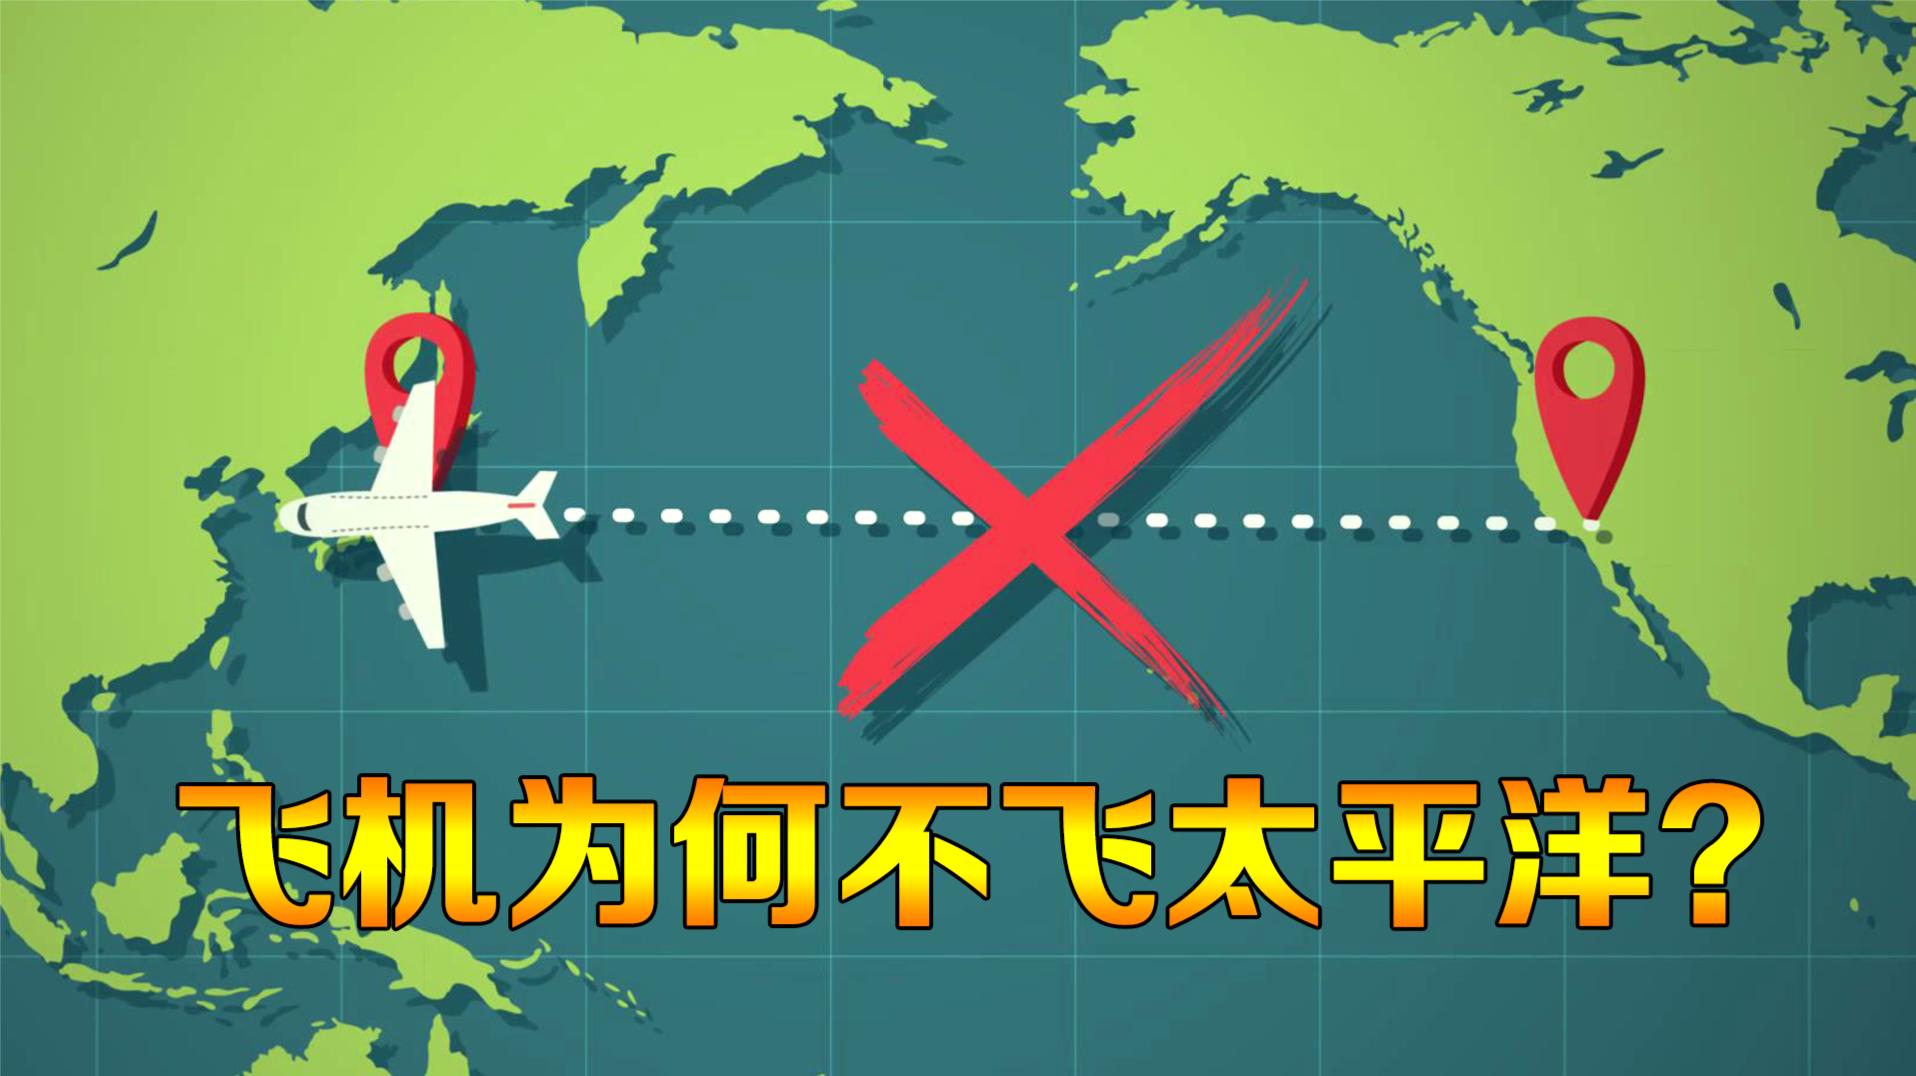 为什么飞机从不飞越太平洋？动画演示飞行过程，多年的疑惑解开了